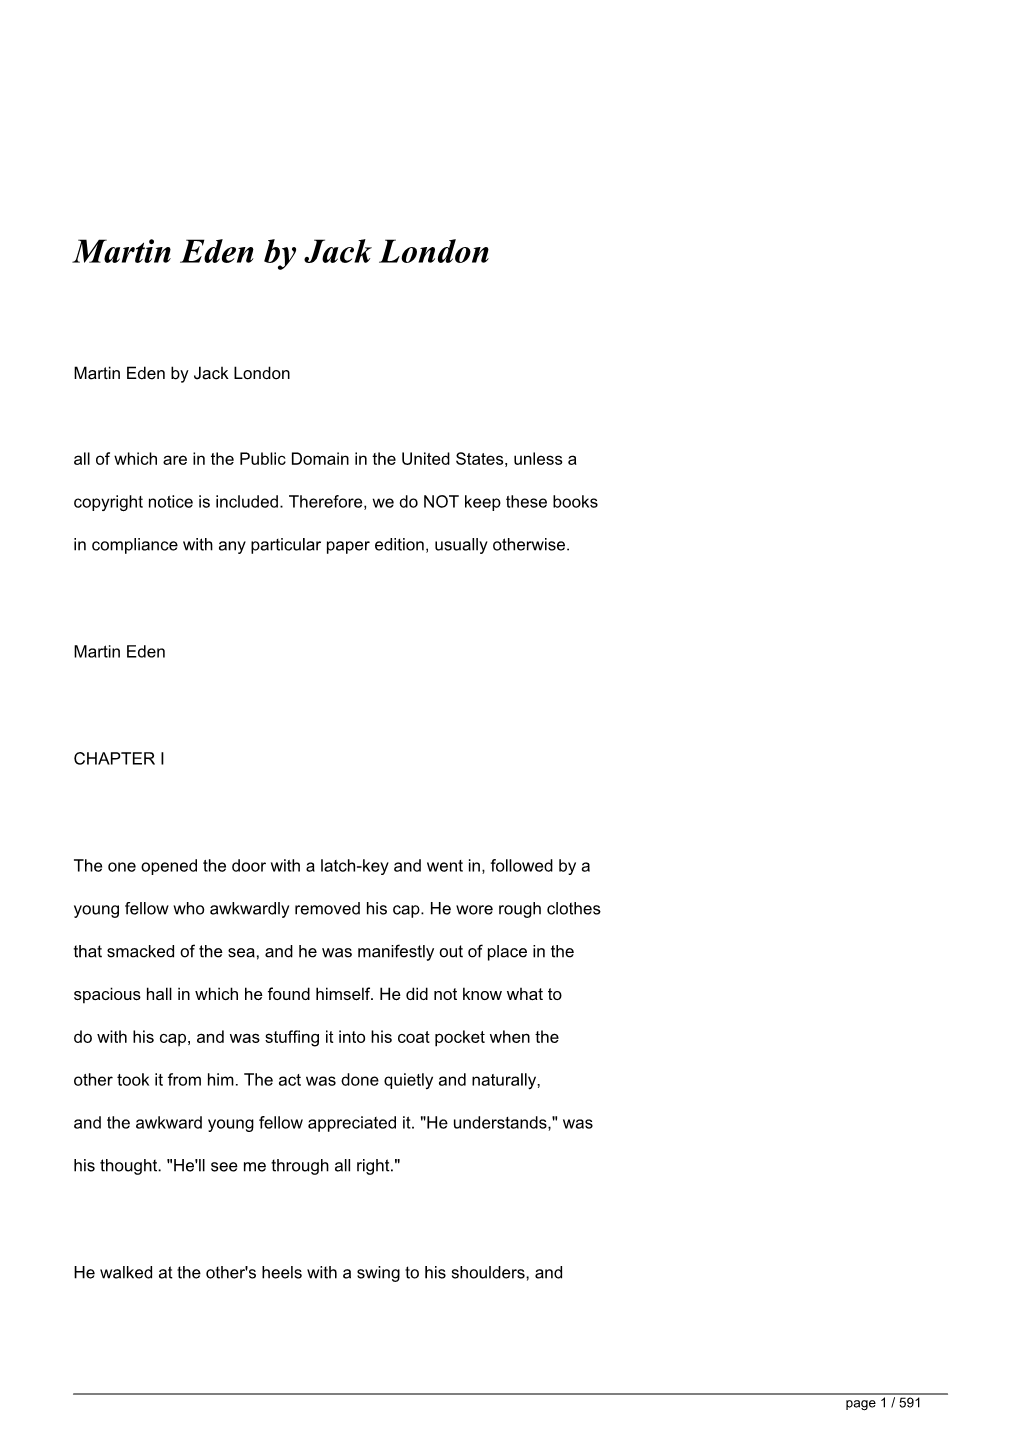 Martin Eden by Jack London&lt;/H1&gt;